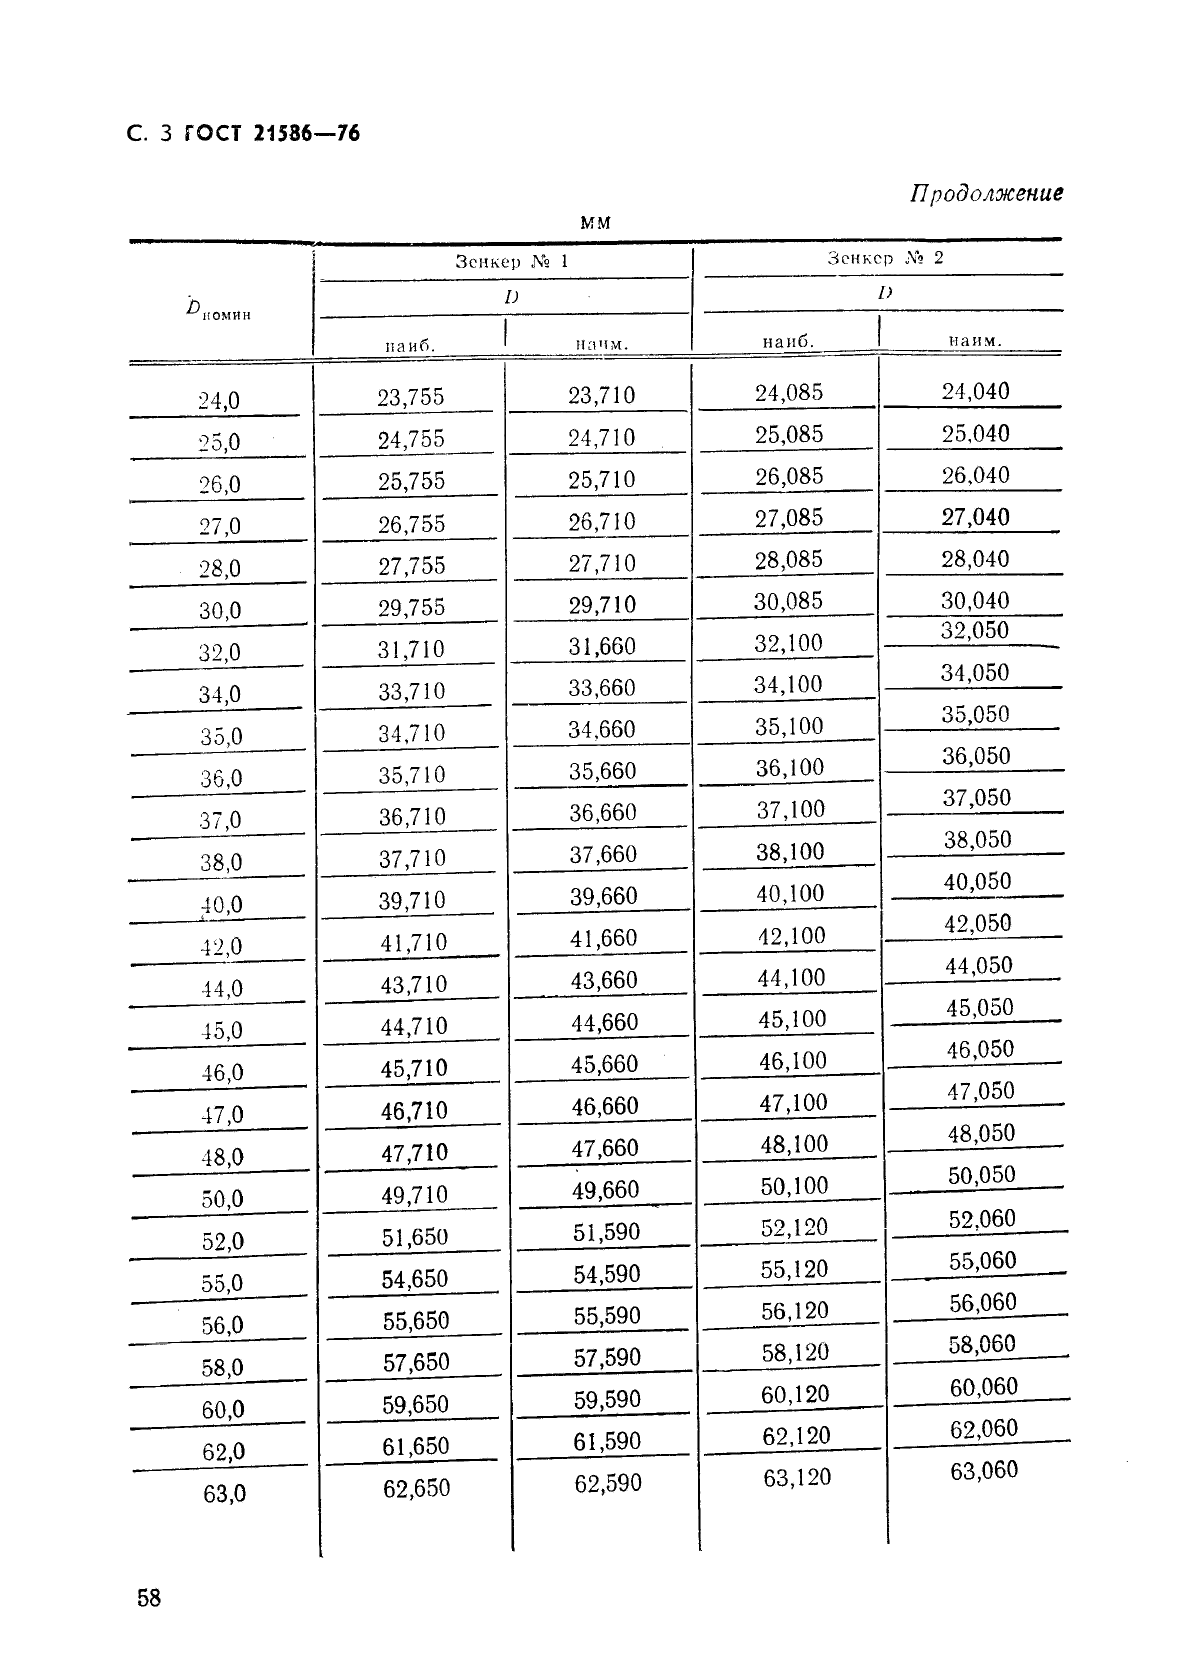  21586-76,  3.